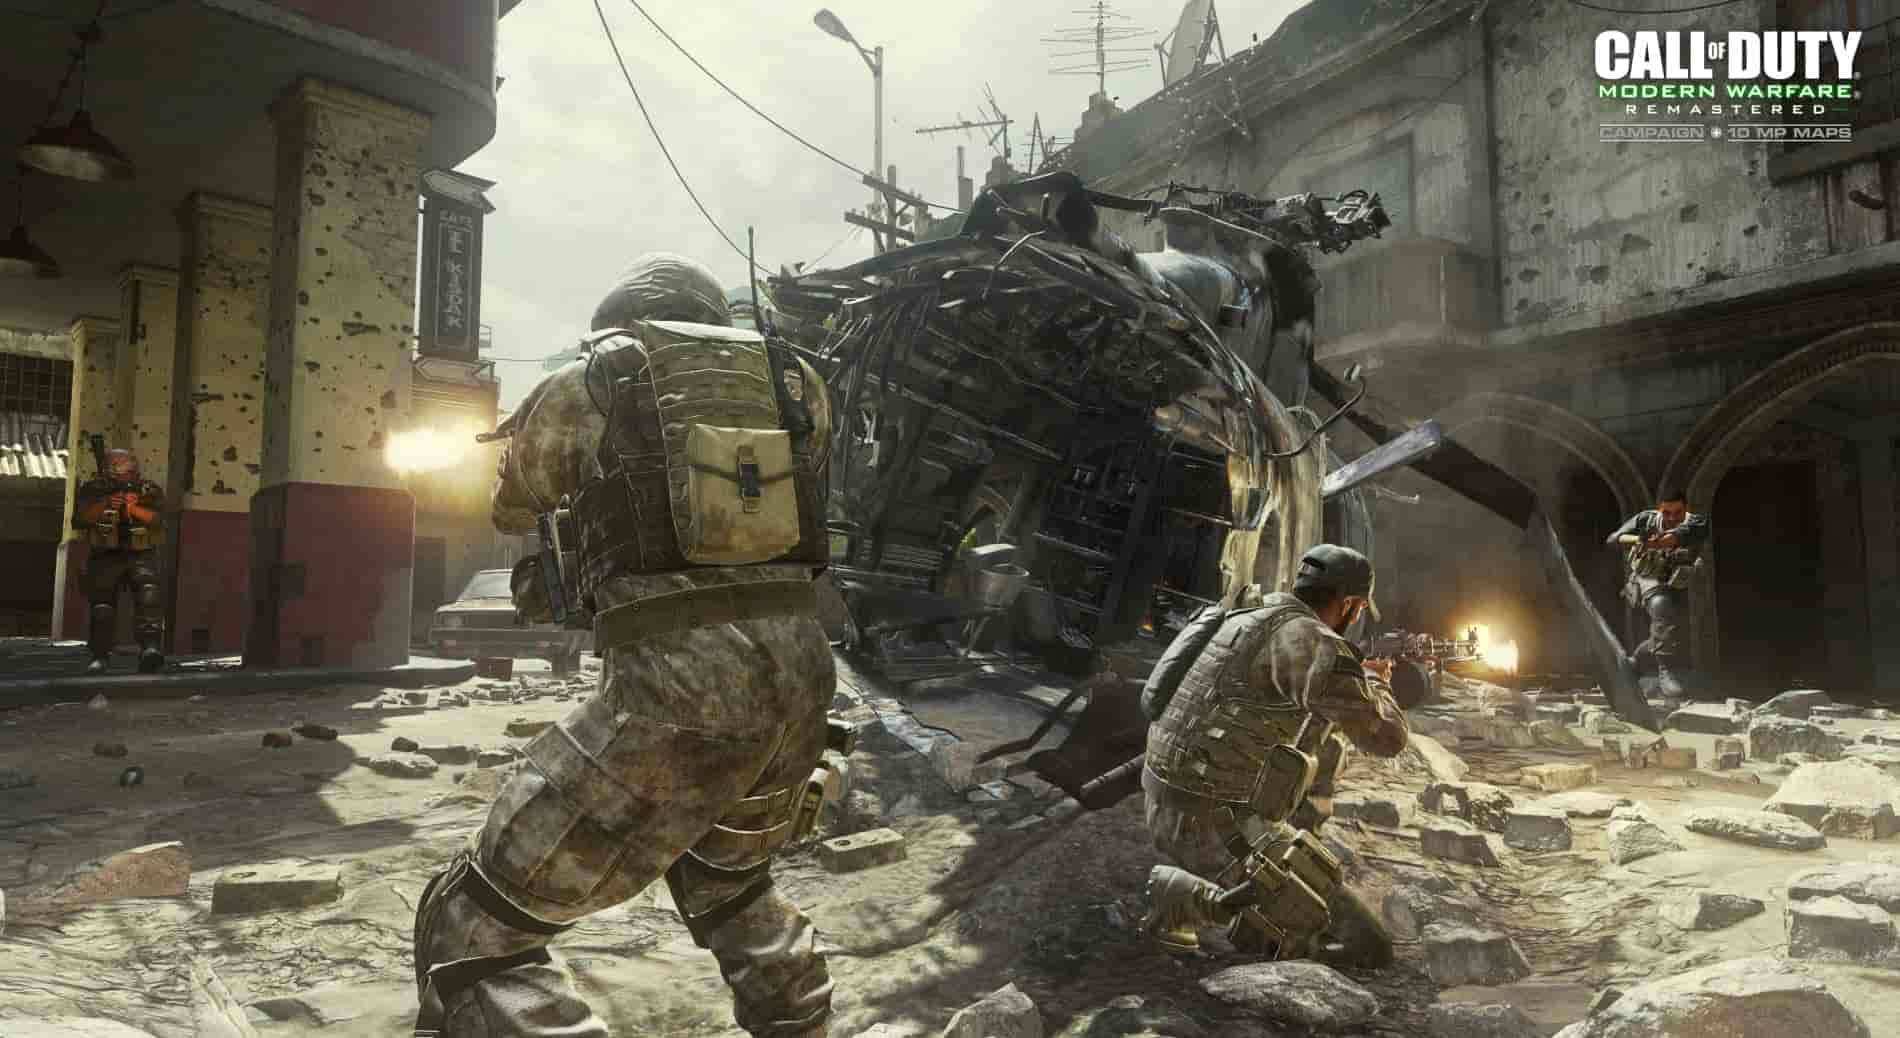  اکانت قانونی Call of Duty: Modern Warfare Remastered برای PS4 & PS5 